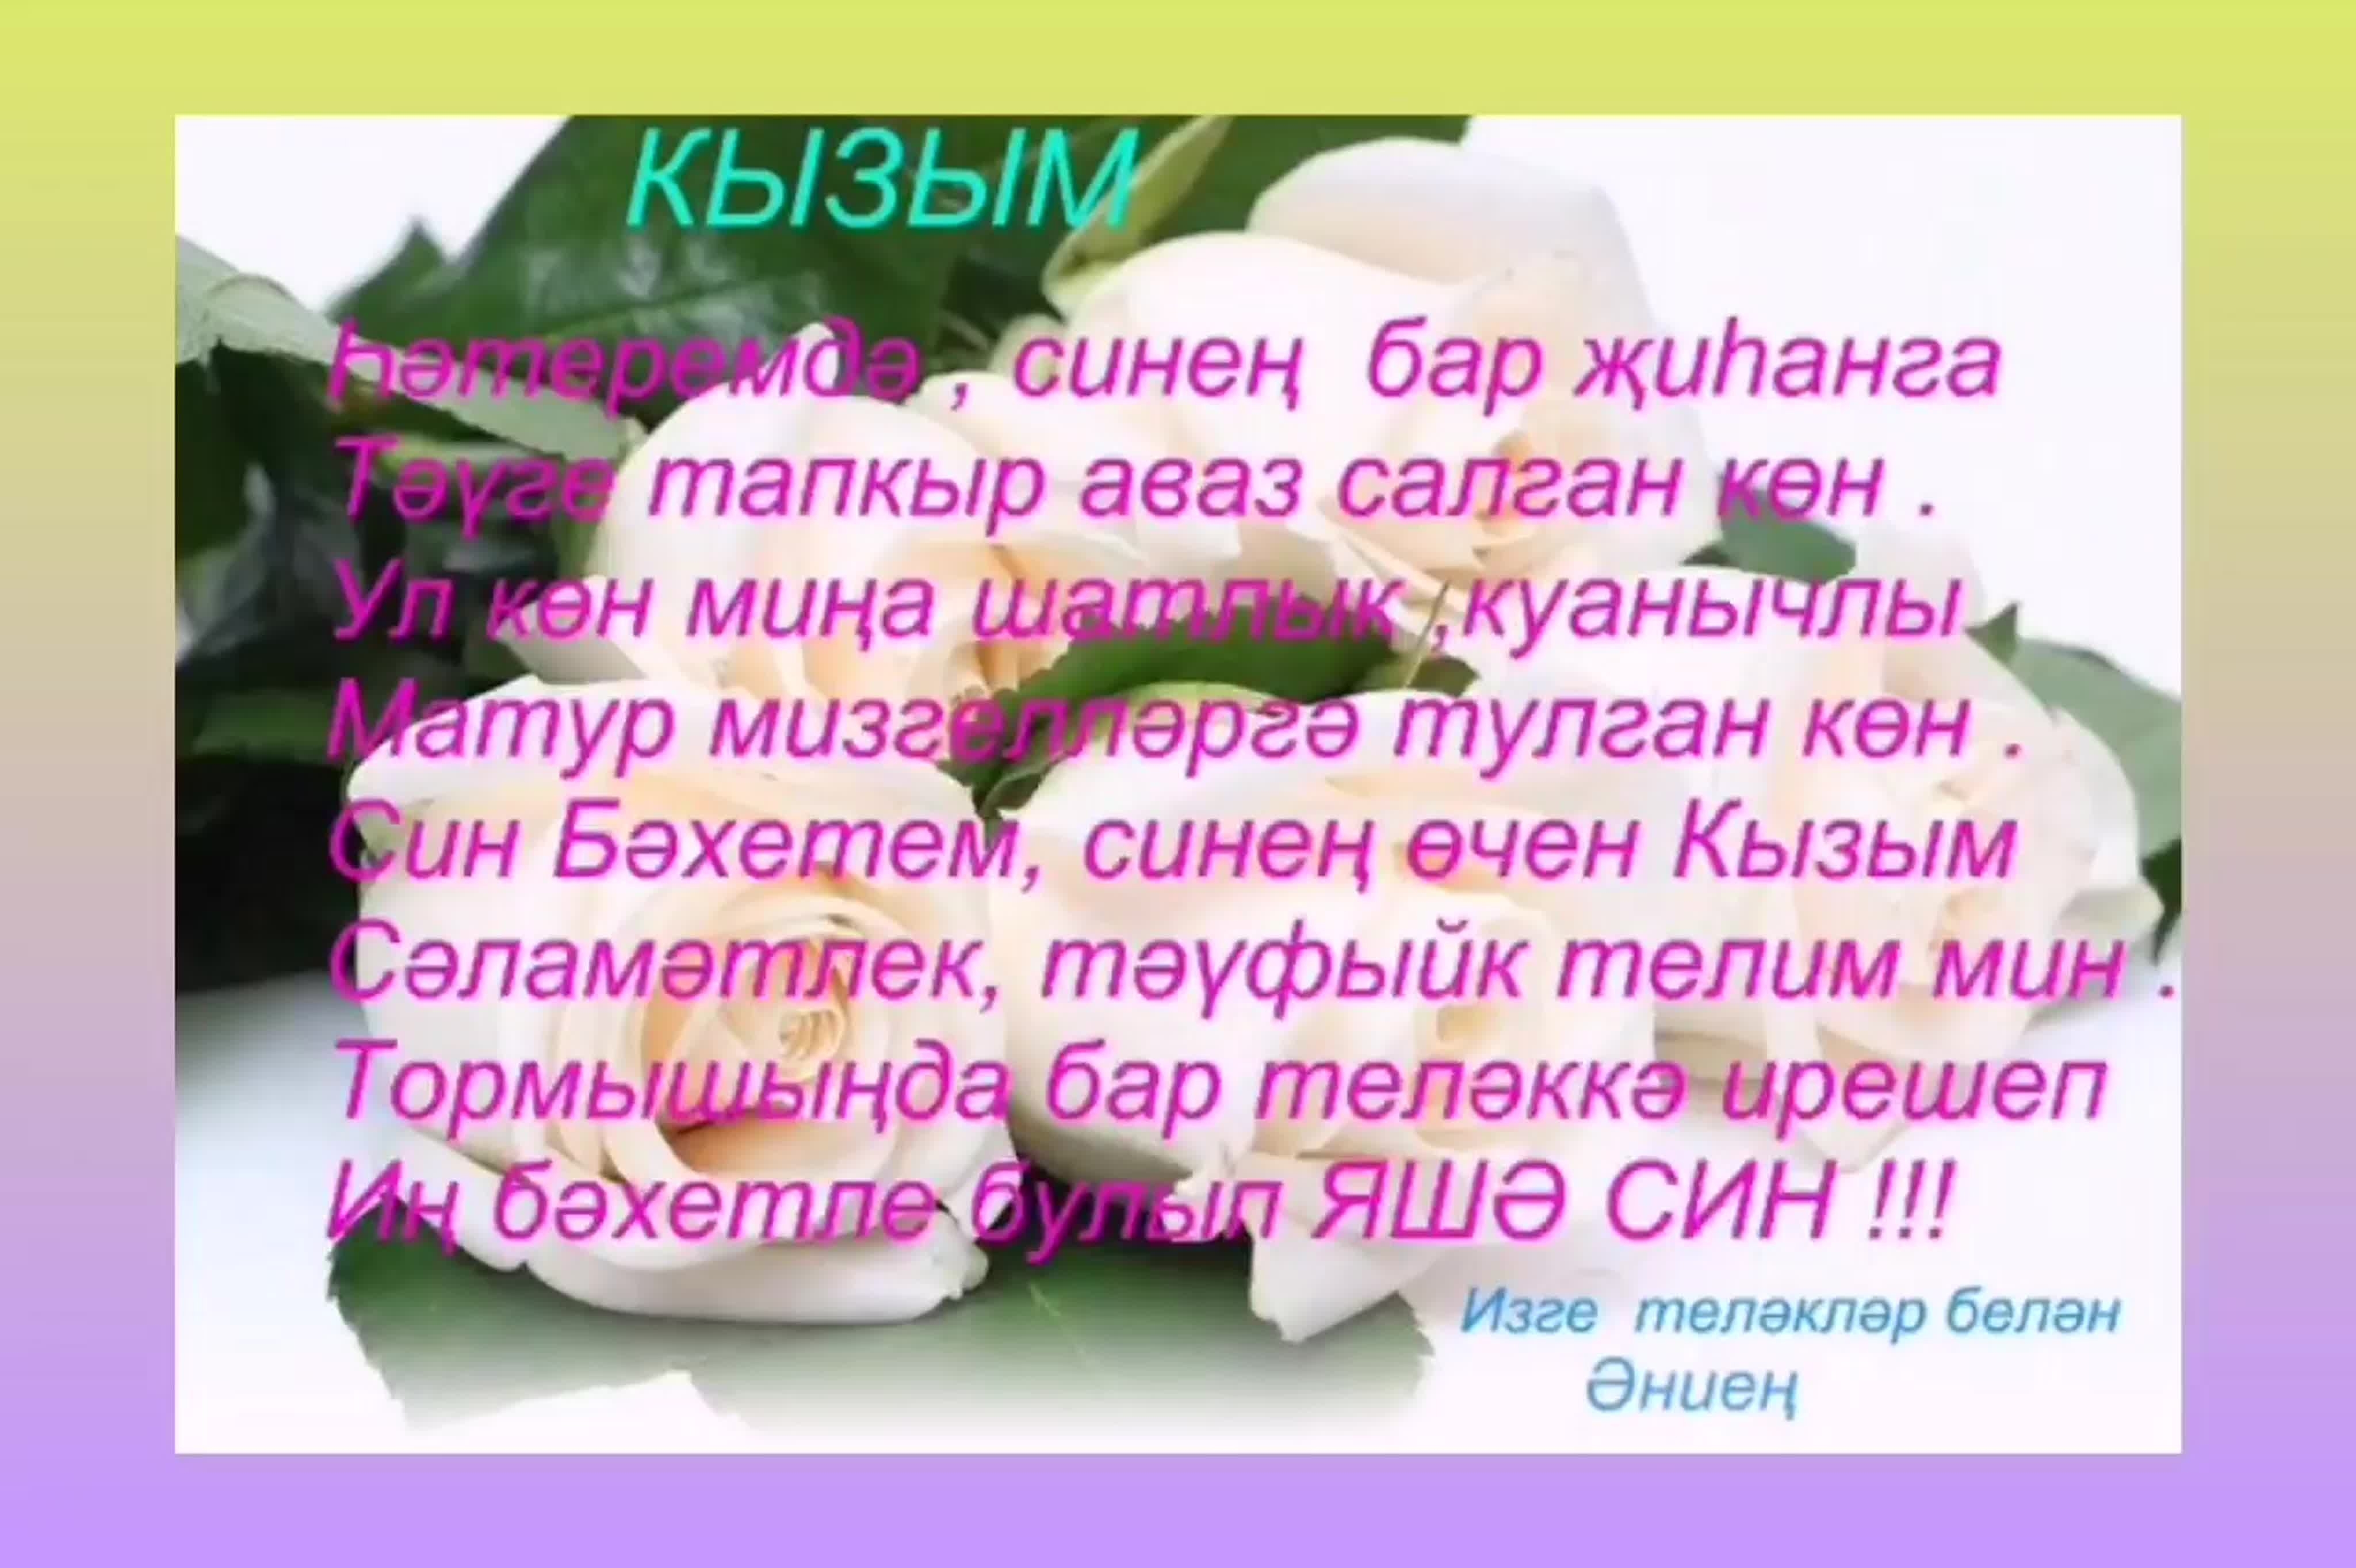 Туган конгэ открытка. С днём рождения на татарском языке. Туган. Красивые открытки с днём рождения кызым. Открытка Кызыма.